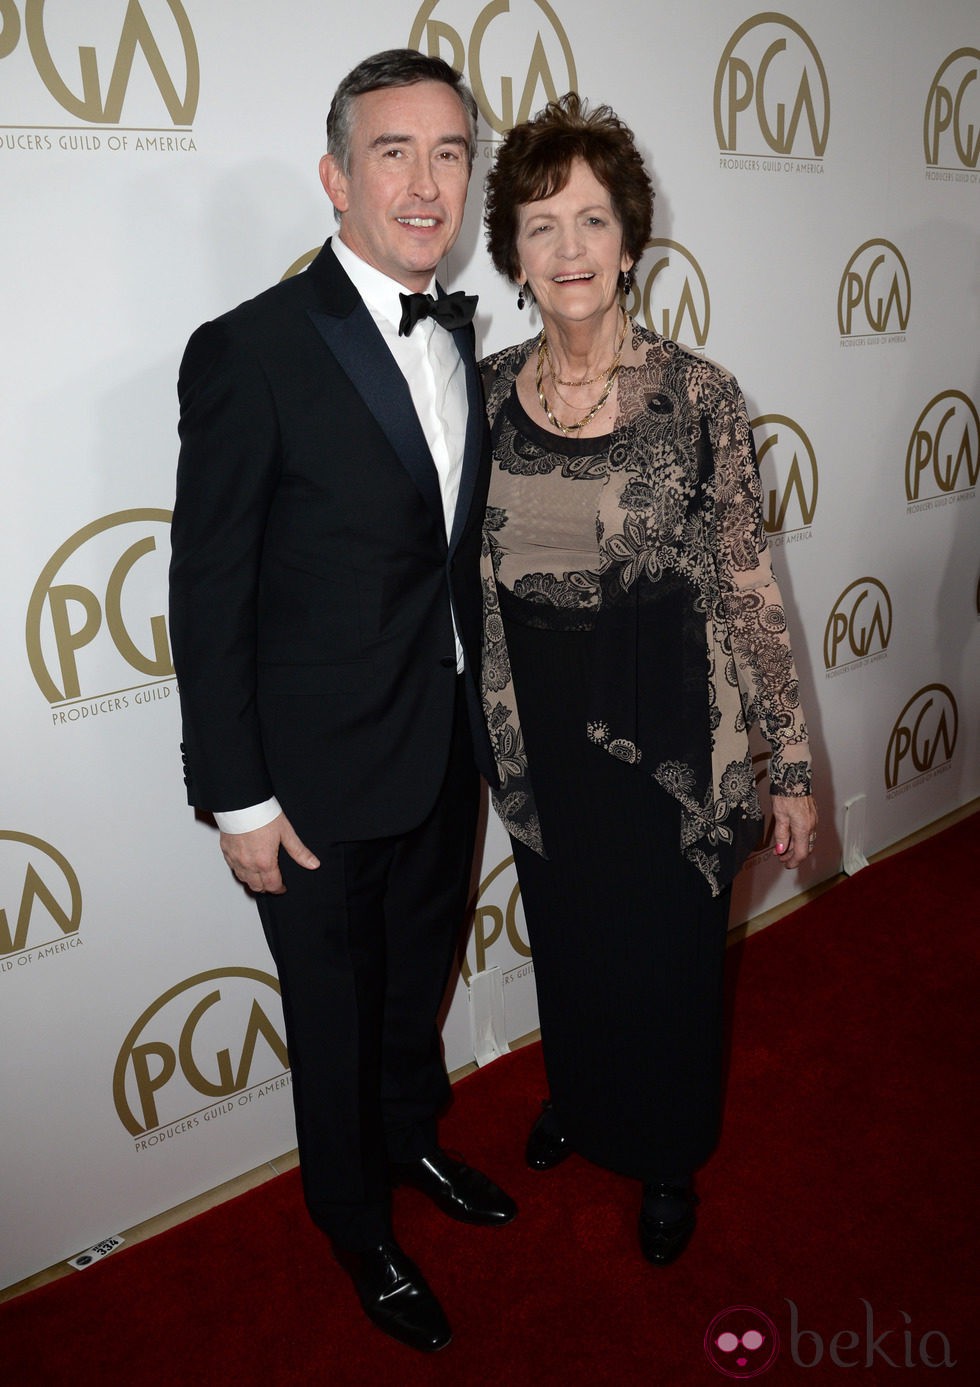 Steve Coogan y Philomena Lee en la gala de entrega de los Producers Guild Awards 2014